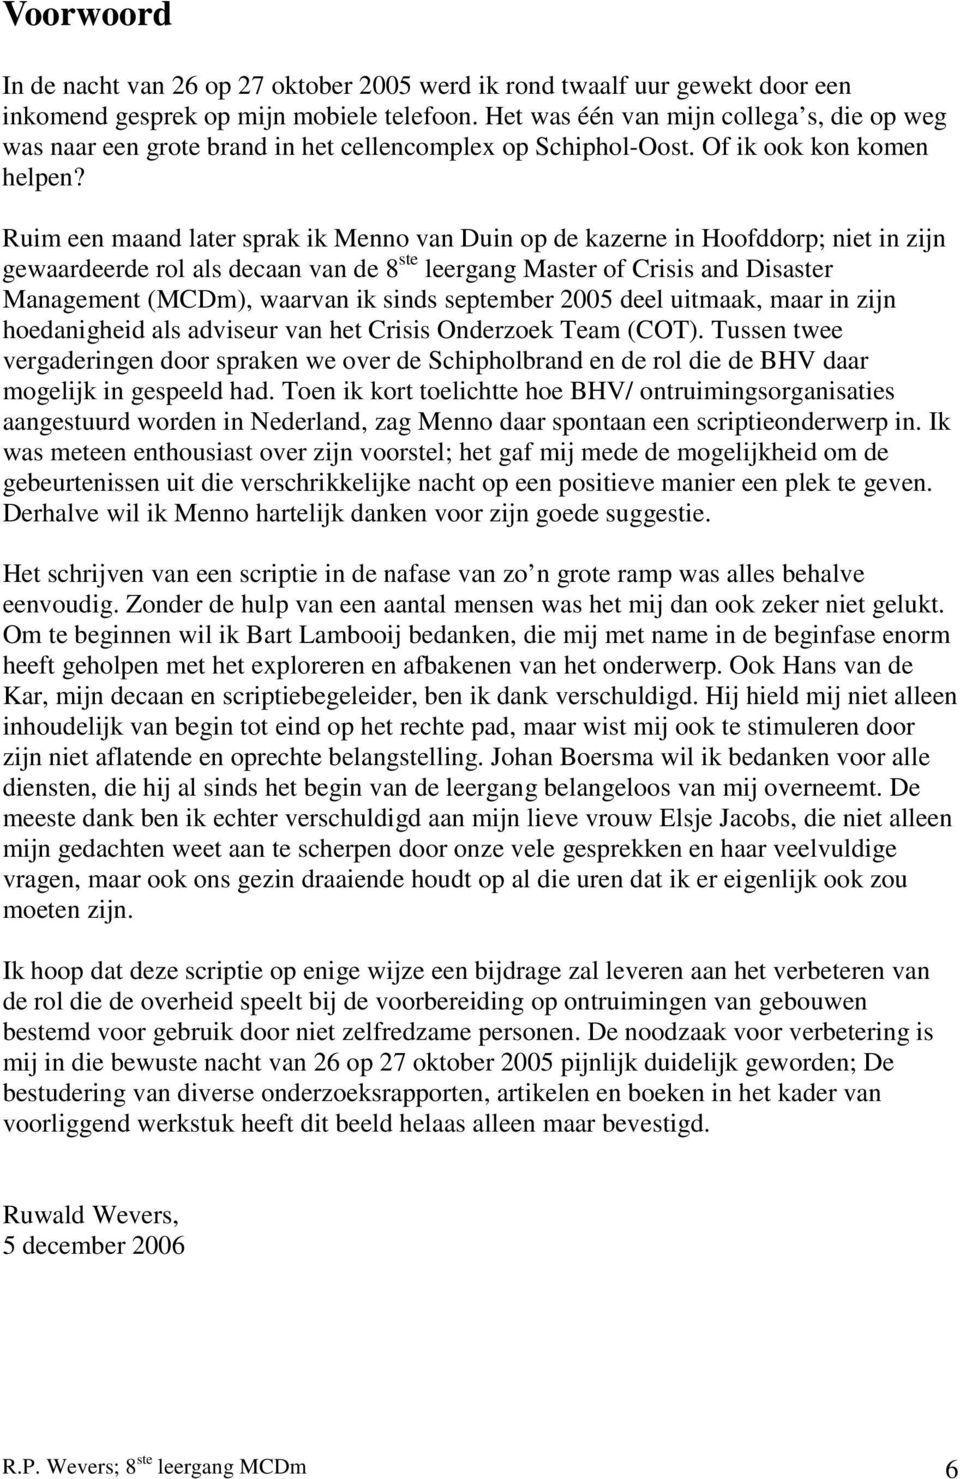 Ruim een maand later sprak ik Menno van Duin op de kazerne in Hoofddorp; niet in zijn gewaardeerde rol als decaan van de 8 ste leergang Master of Crisis and Disaster Management (MCDm), waarvan ik